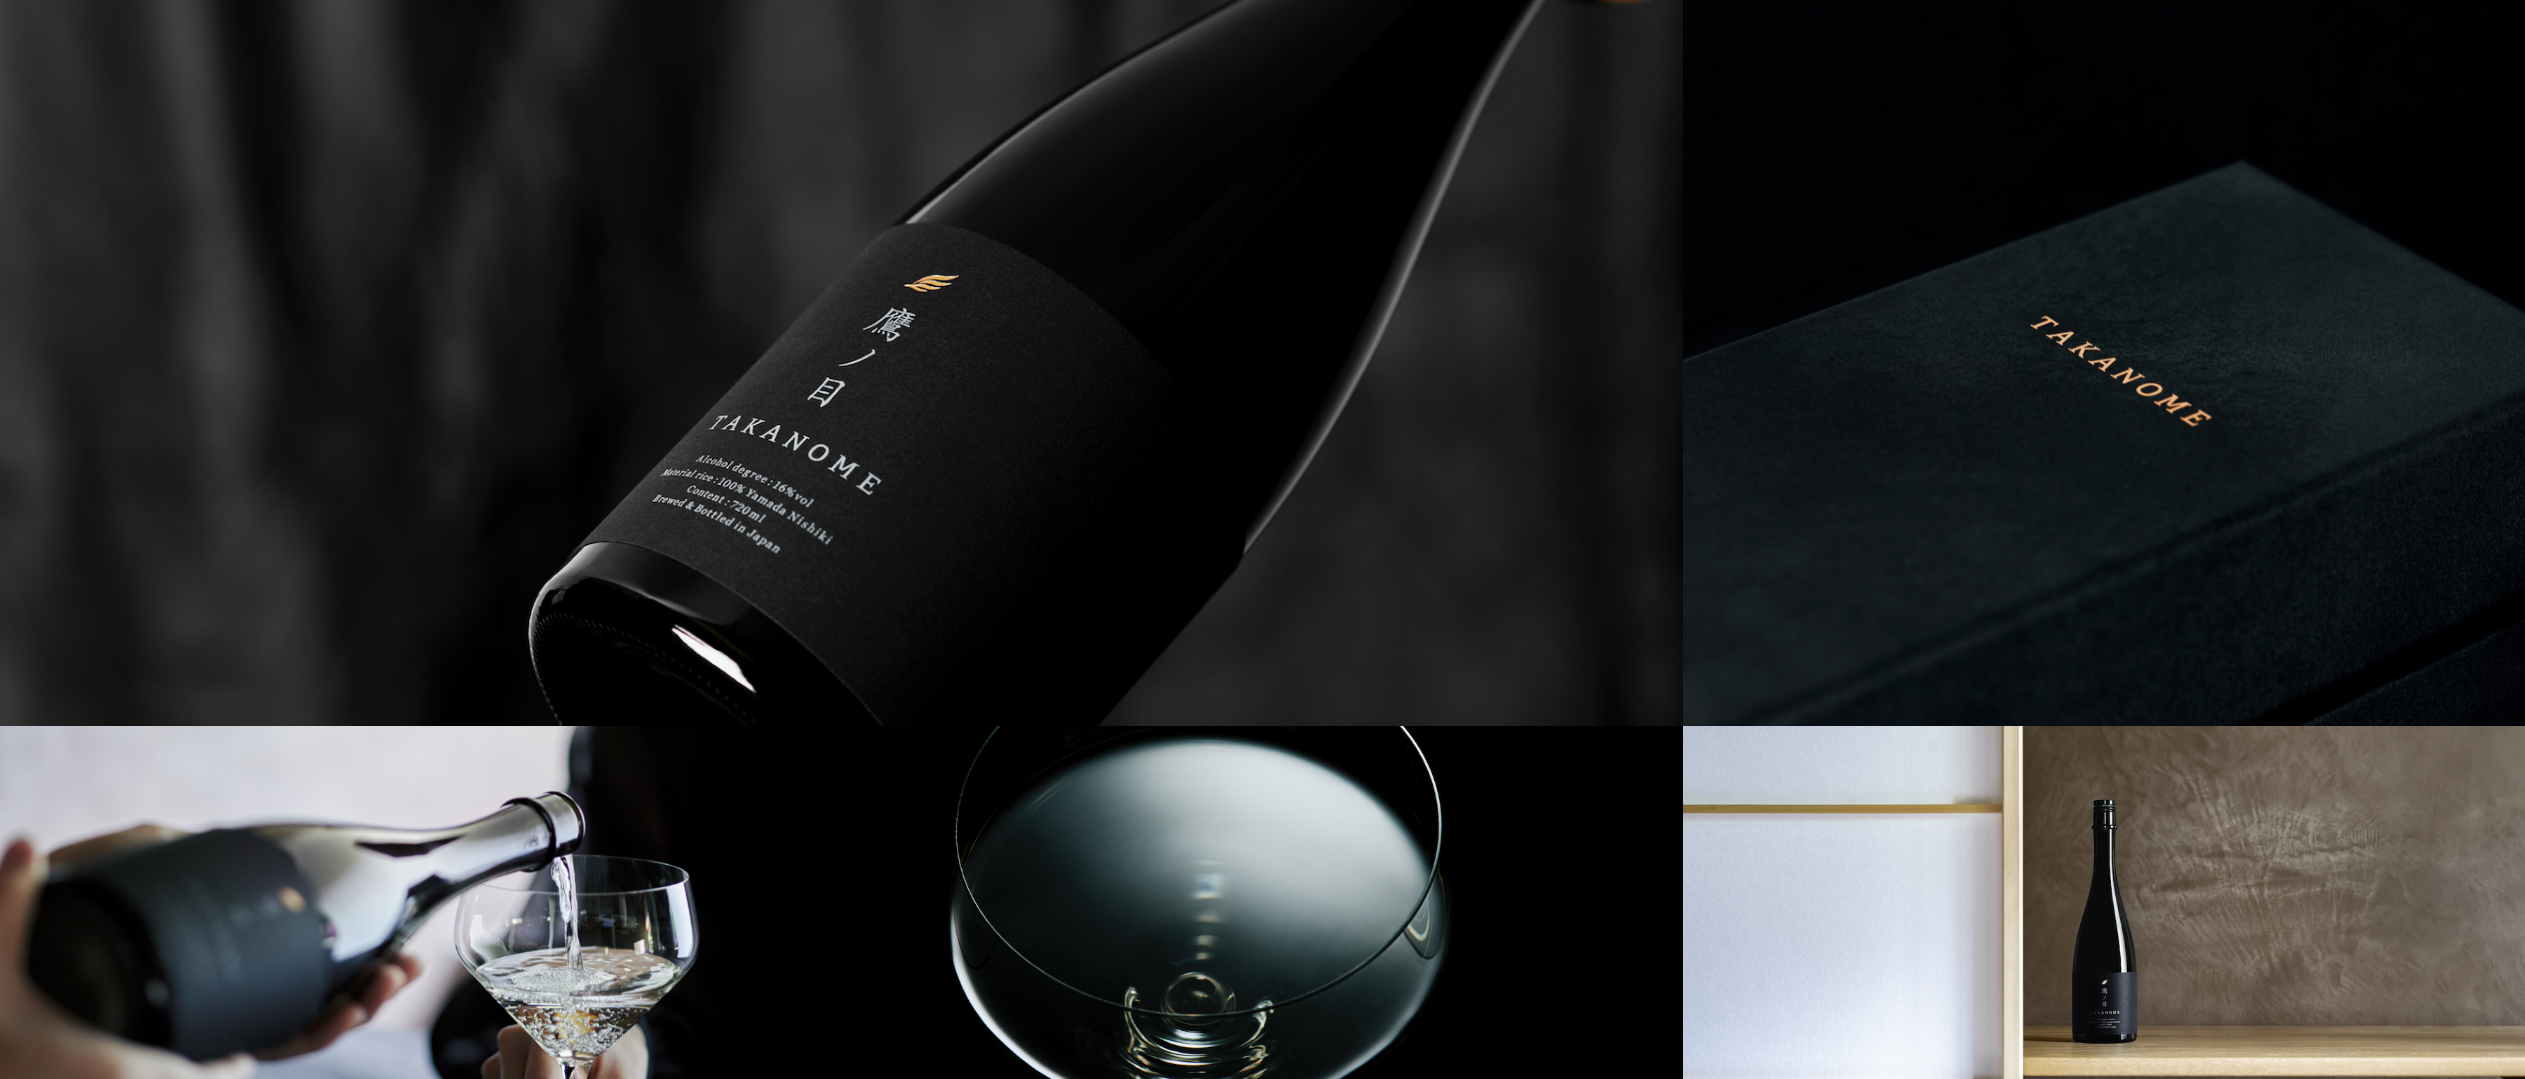 急成長中の日本酒D2Cブランド「鷹ノ目」が「TAKANOME」へリニューアル。味わいを引き上げ、パッケージ、ラベル、ロゴも刷新。五感で楽しむ日本酒へ。